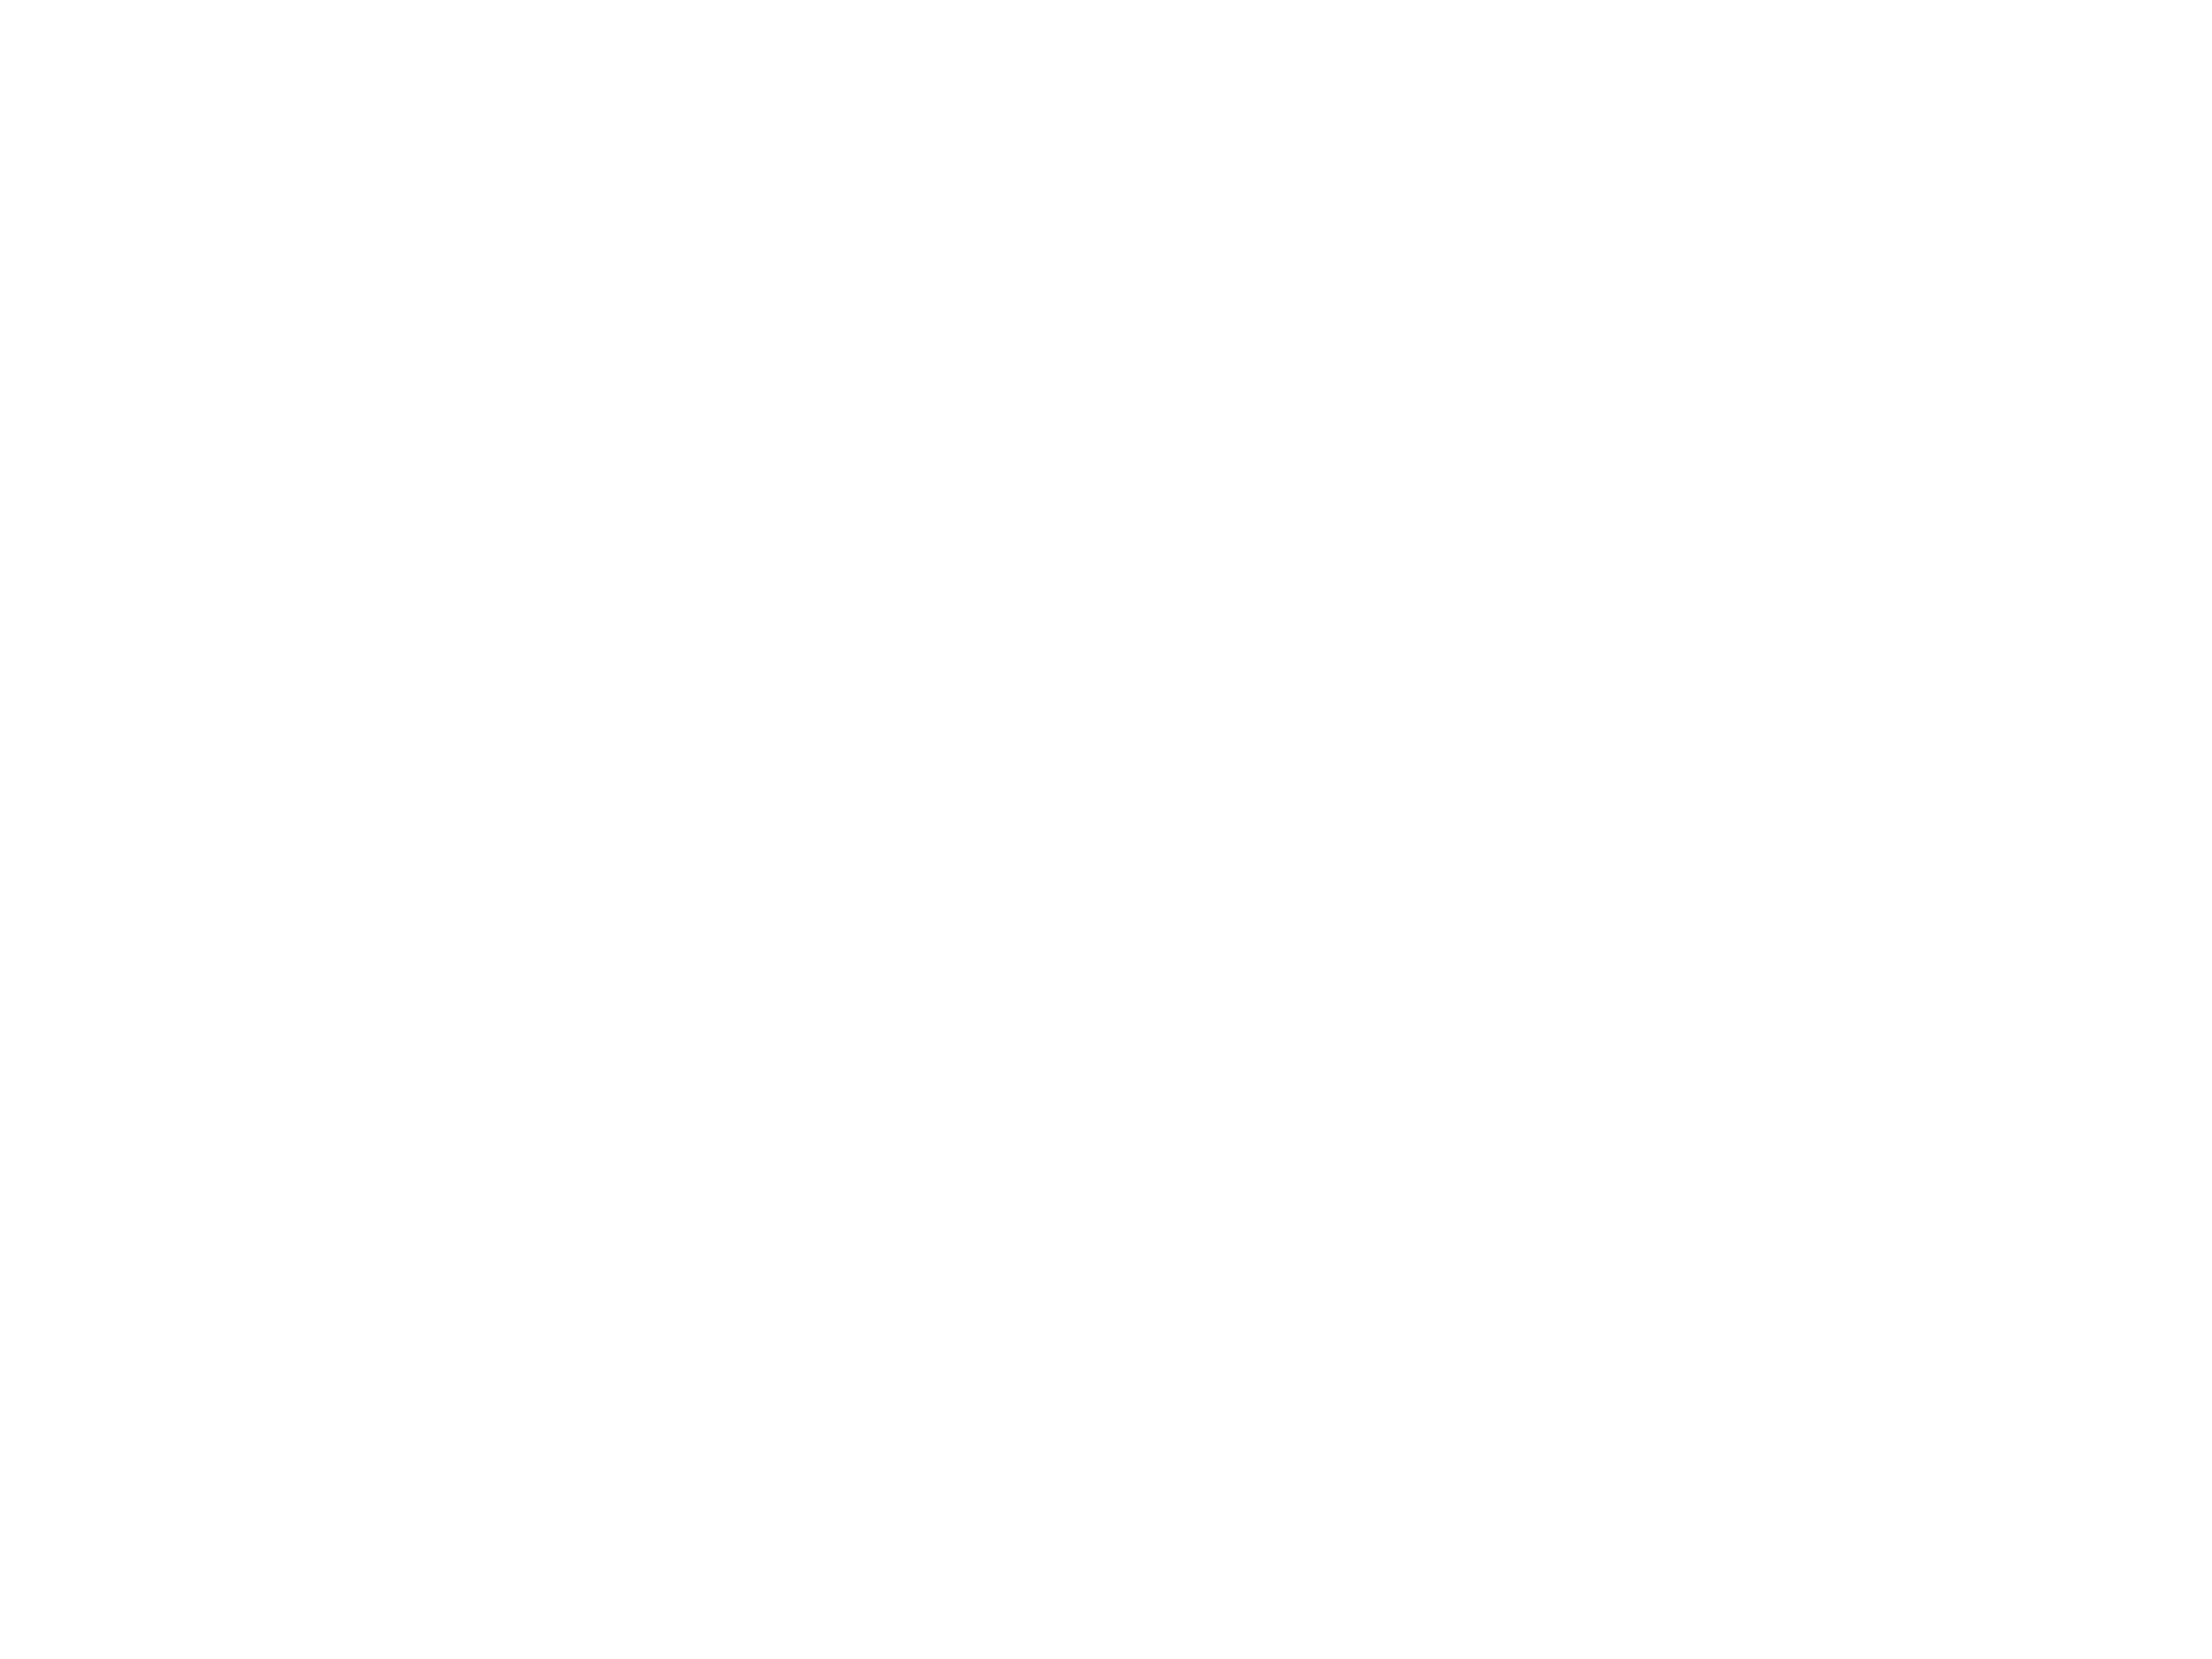 SORAI